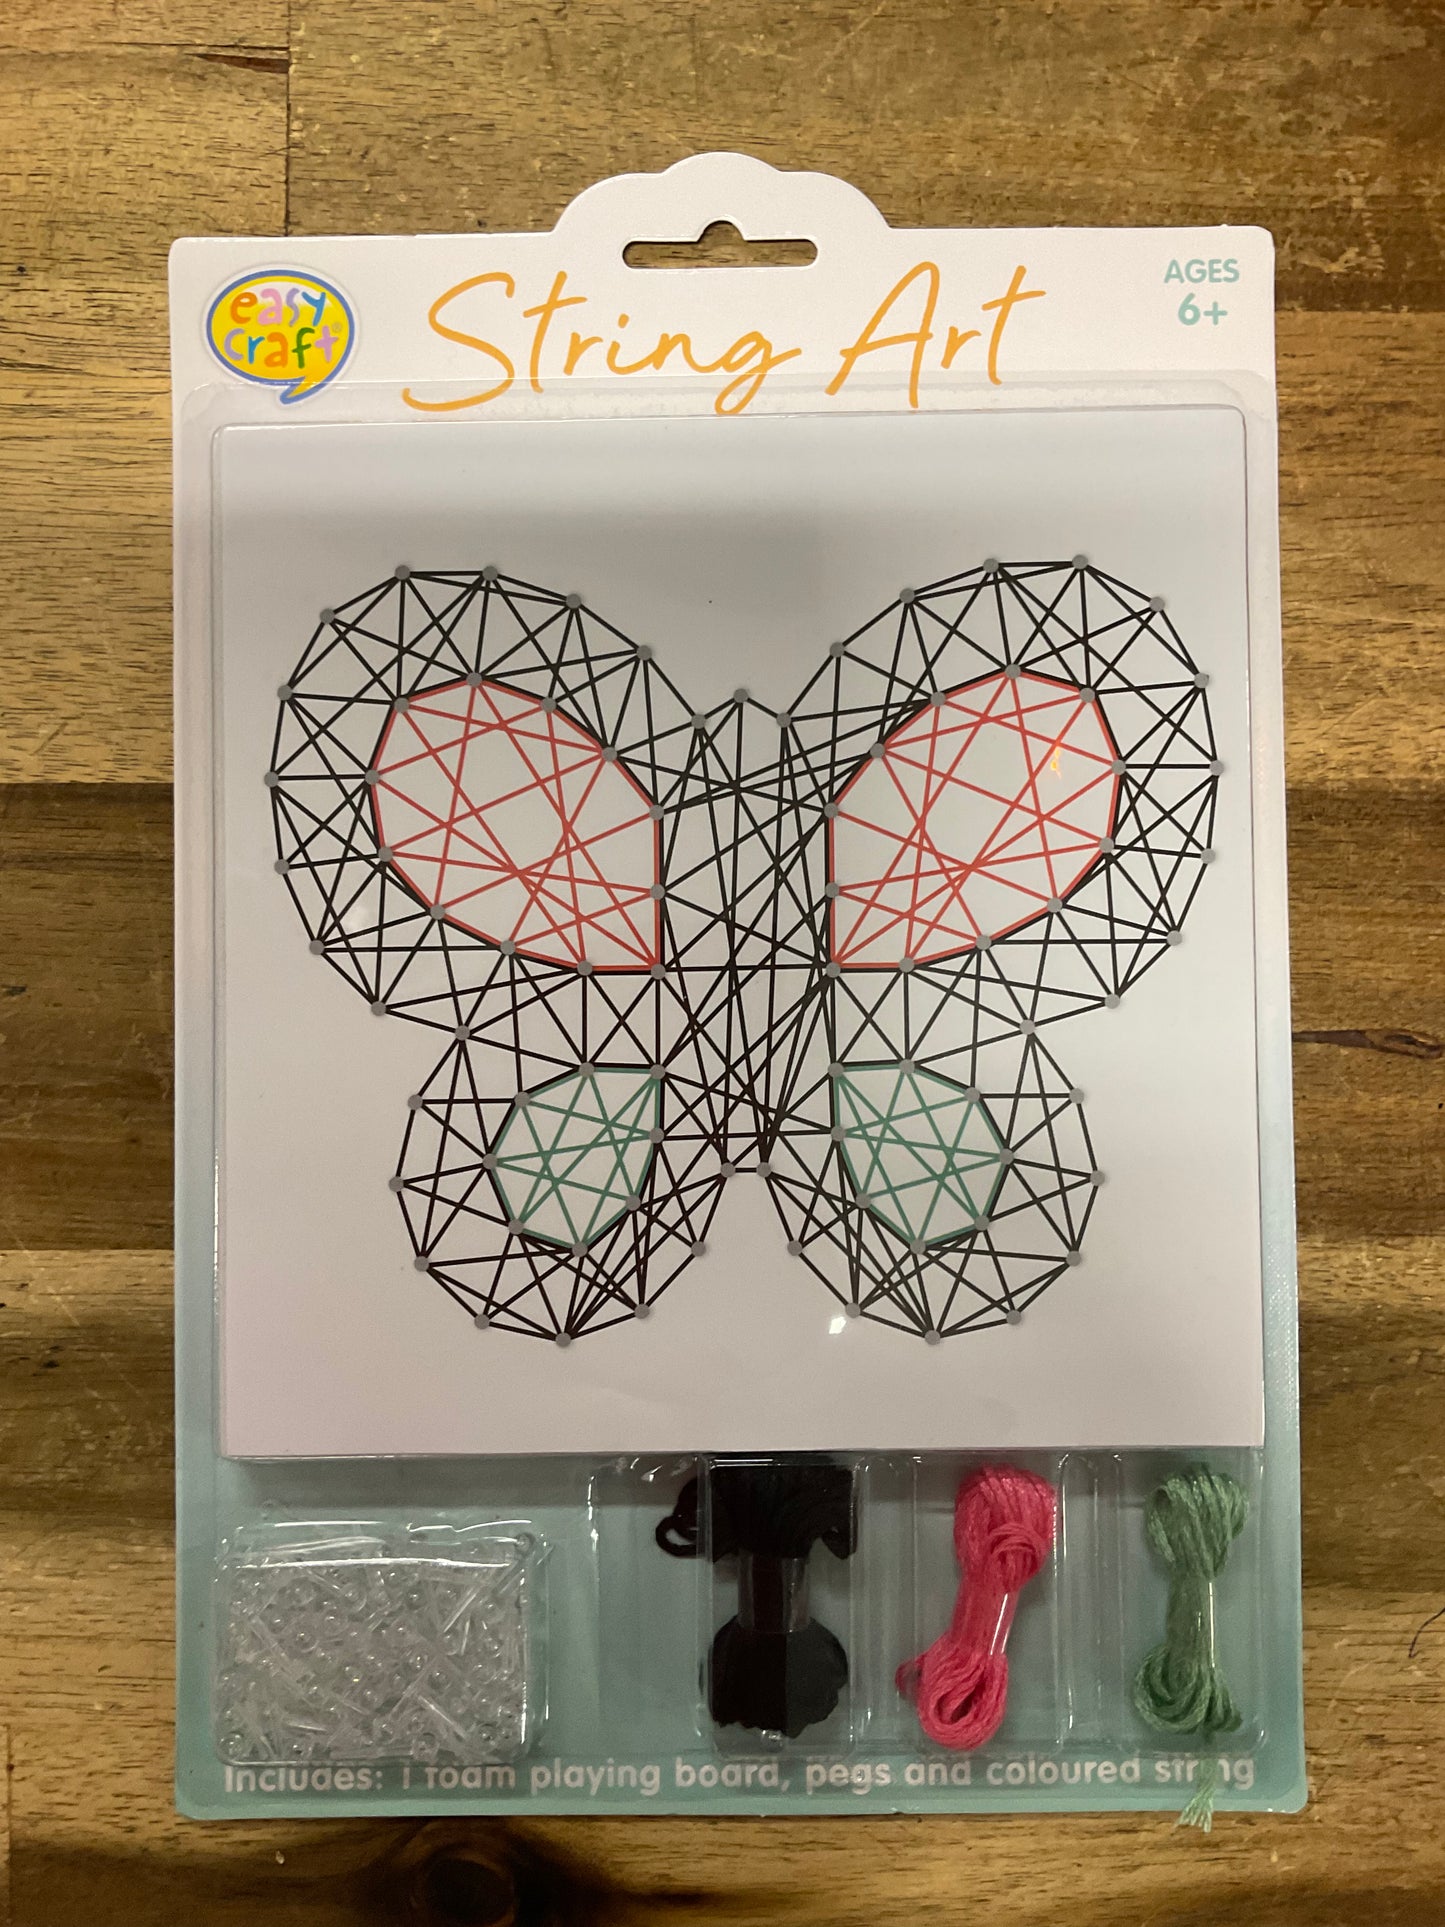 String Art Kit